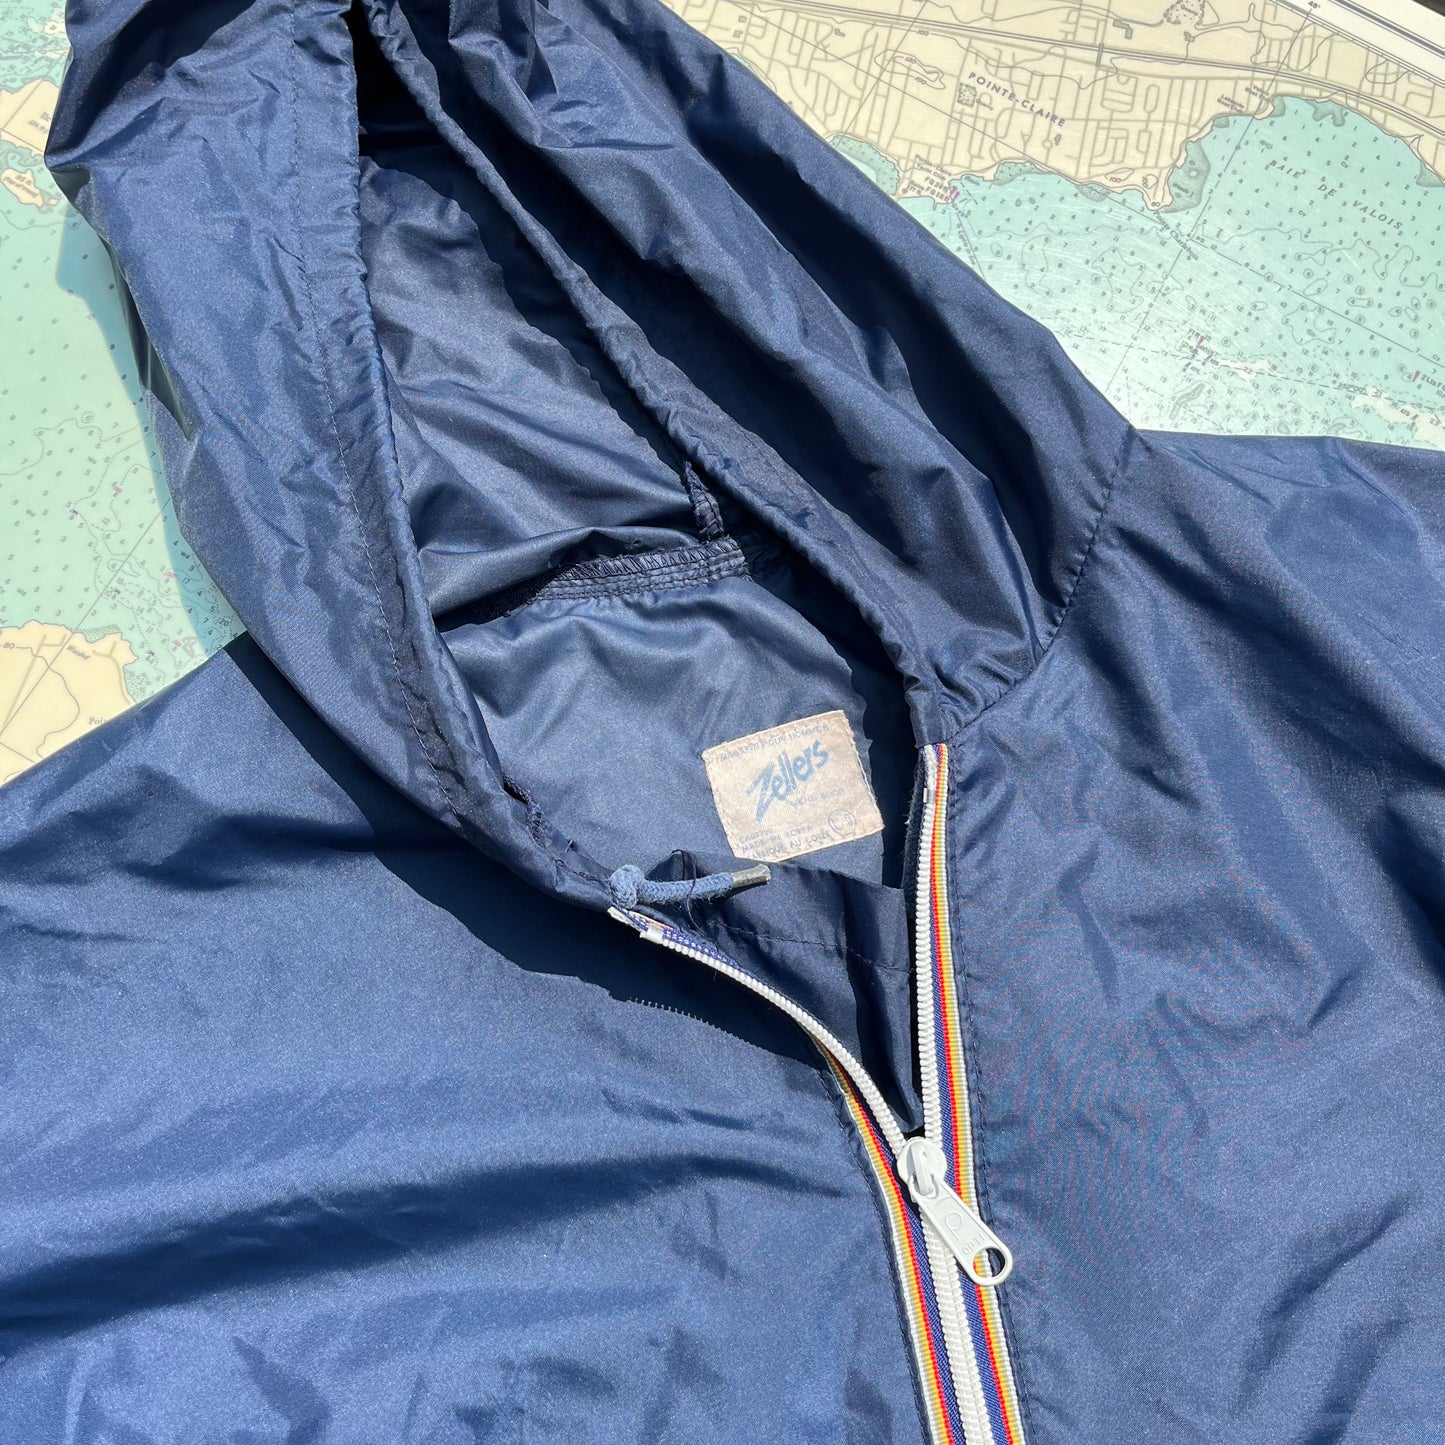 Vintage 70s/80s Navy Zellers Packable Rain Jacket